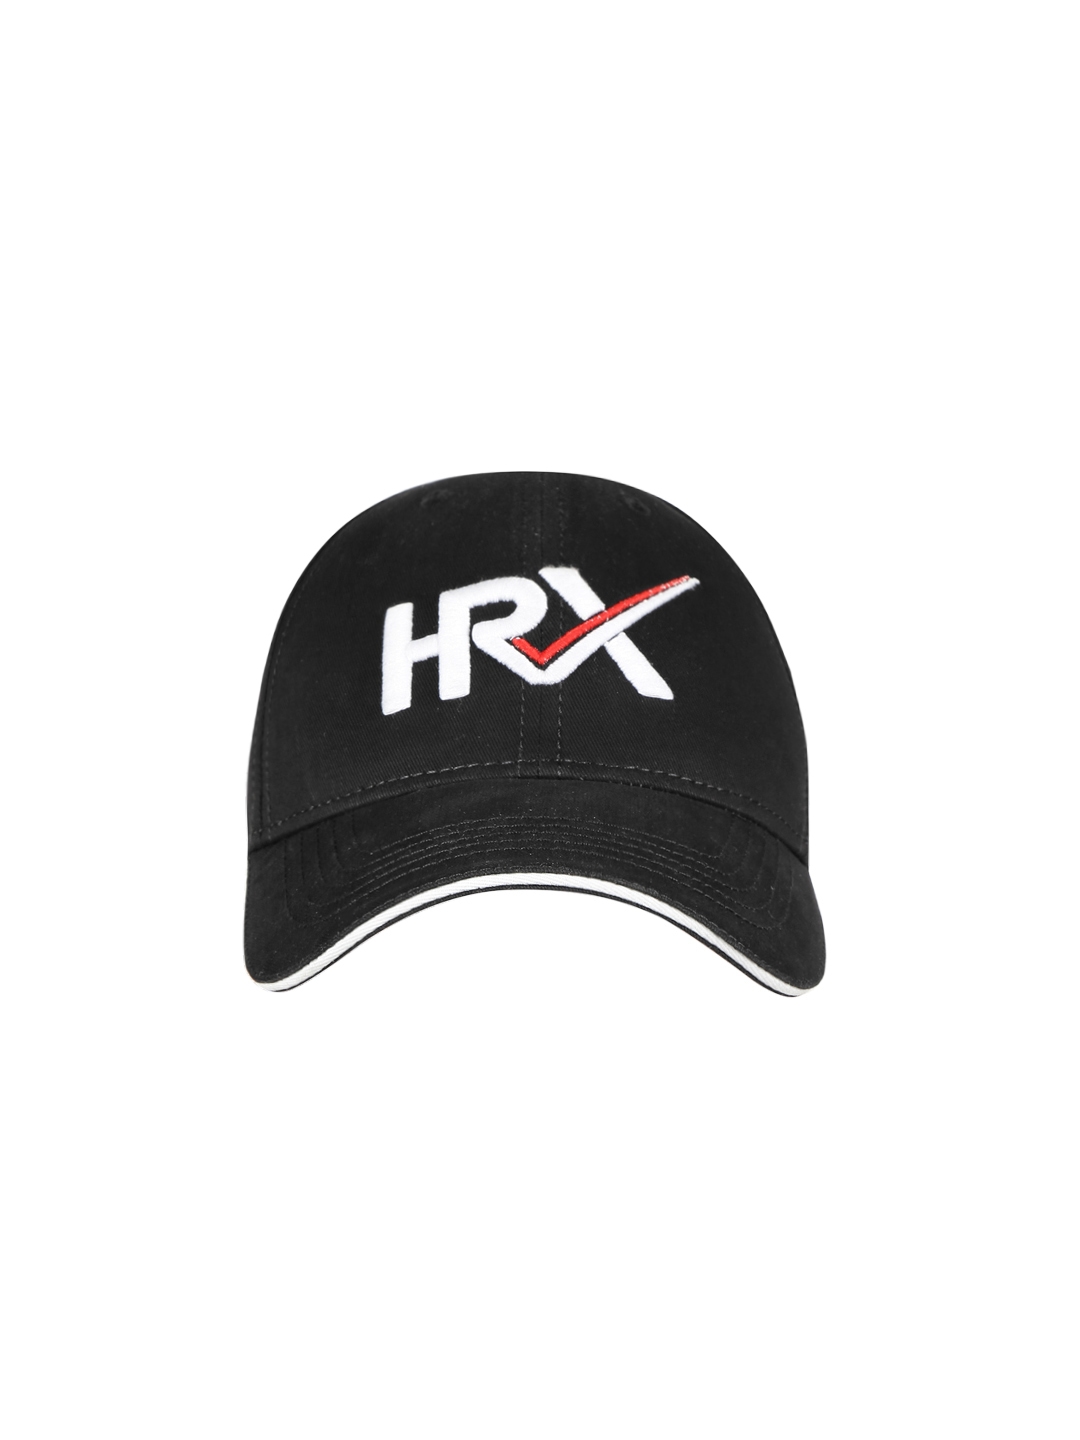 HRX BEST CAP BRANDS IN INDIA